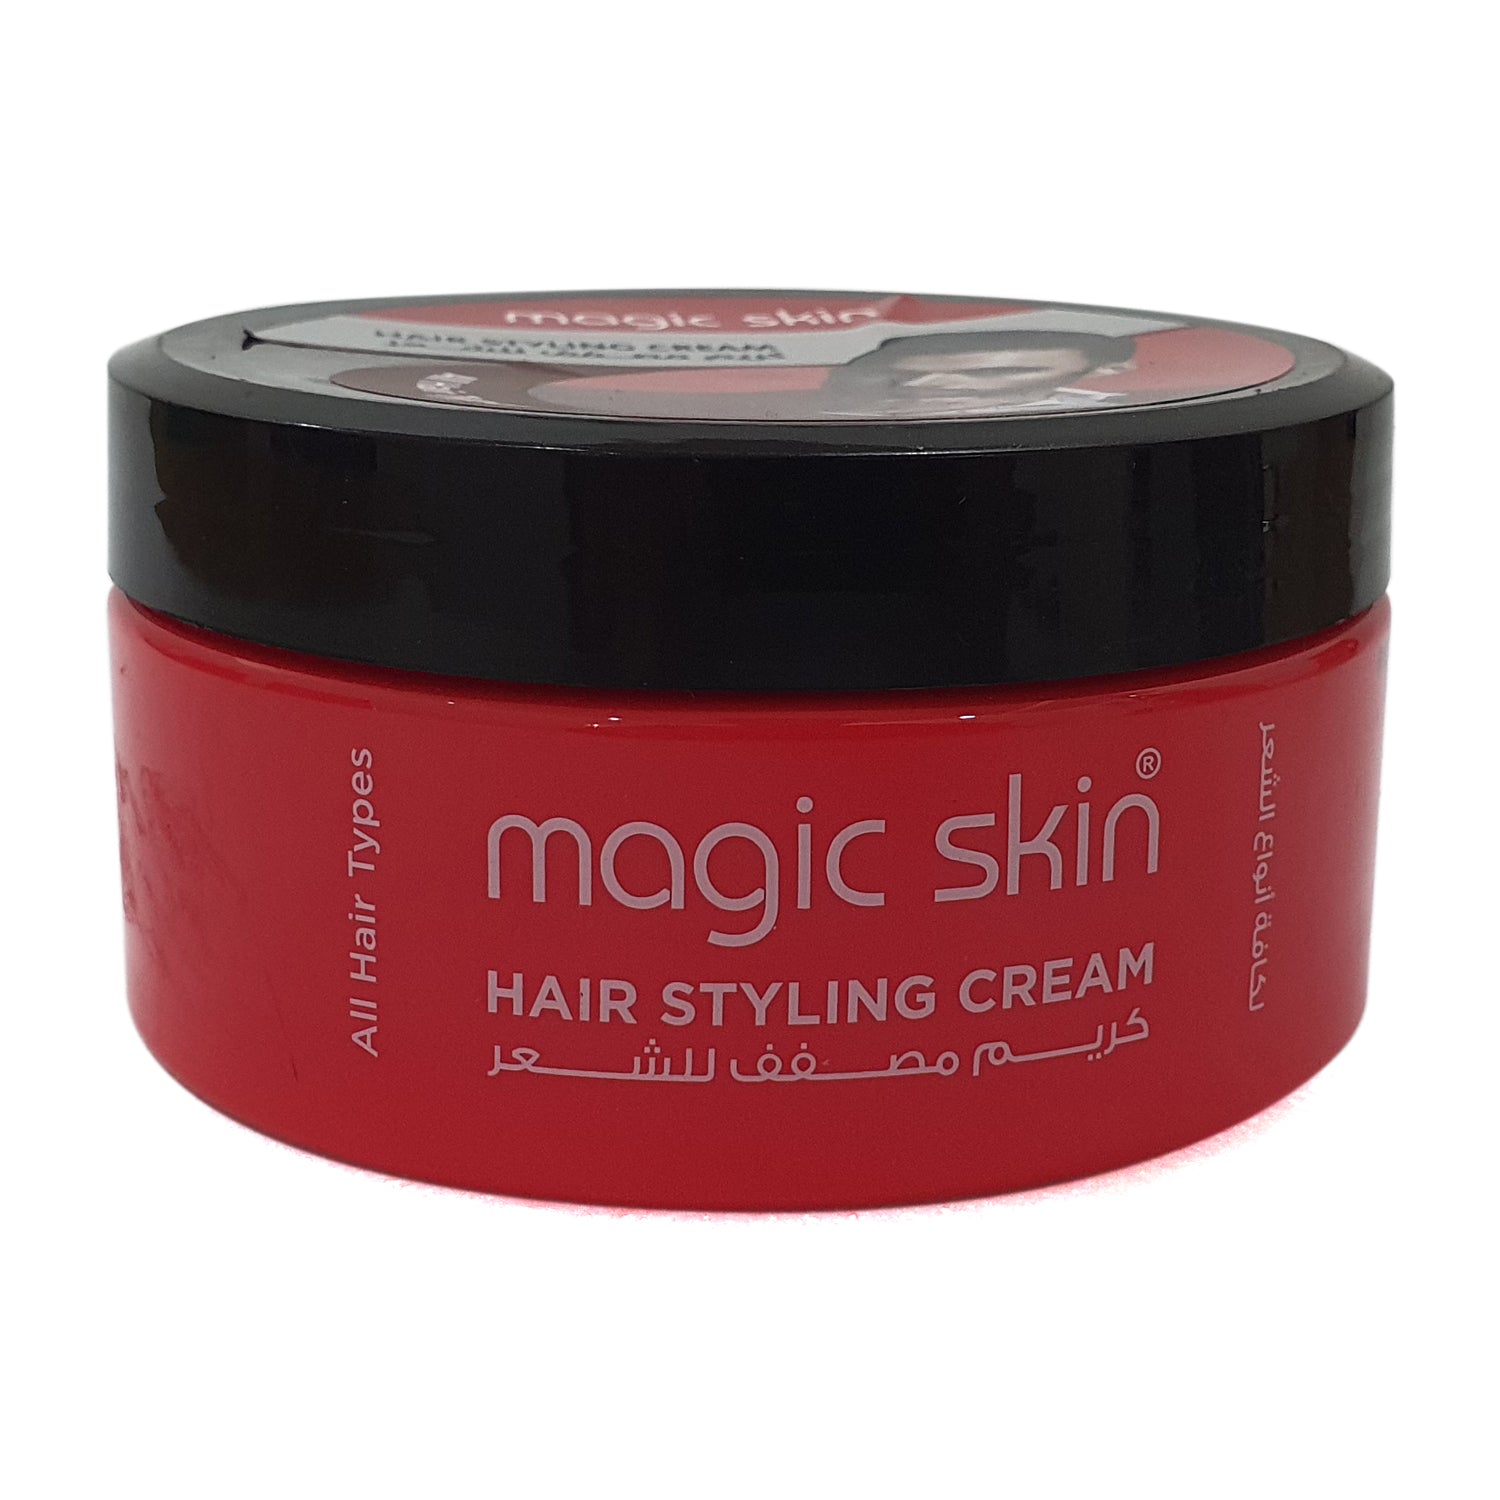 Magic skin Hair Styling Cream All Hair Types 200ml